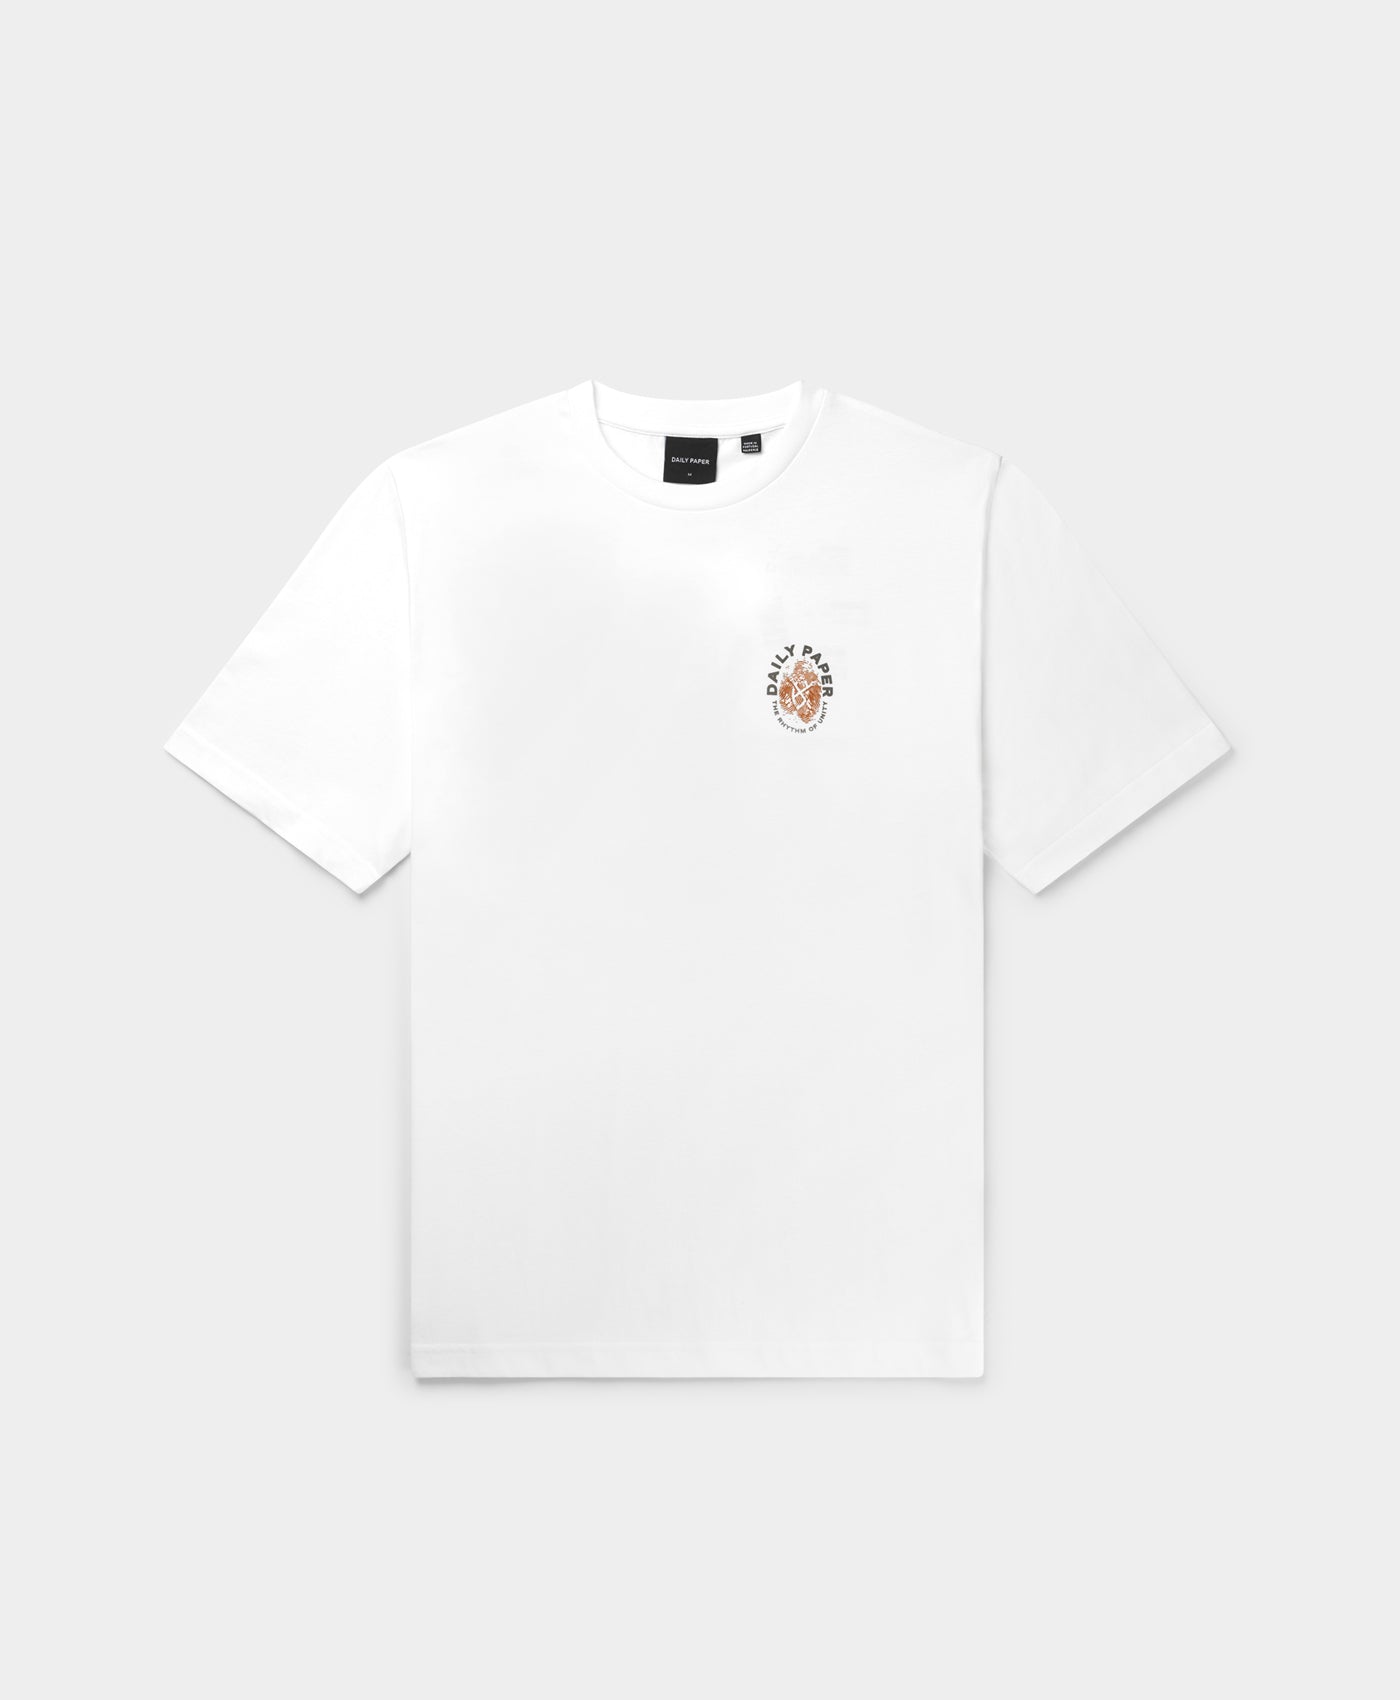 DP - White Identity T-Shirt - Packshot - Rear